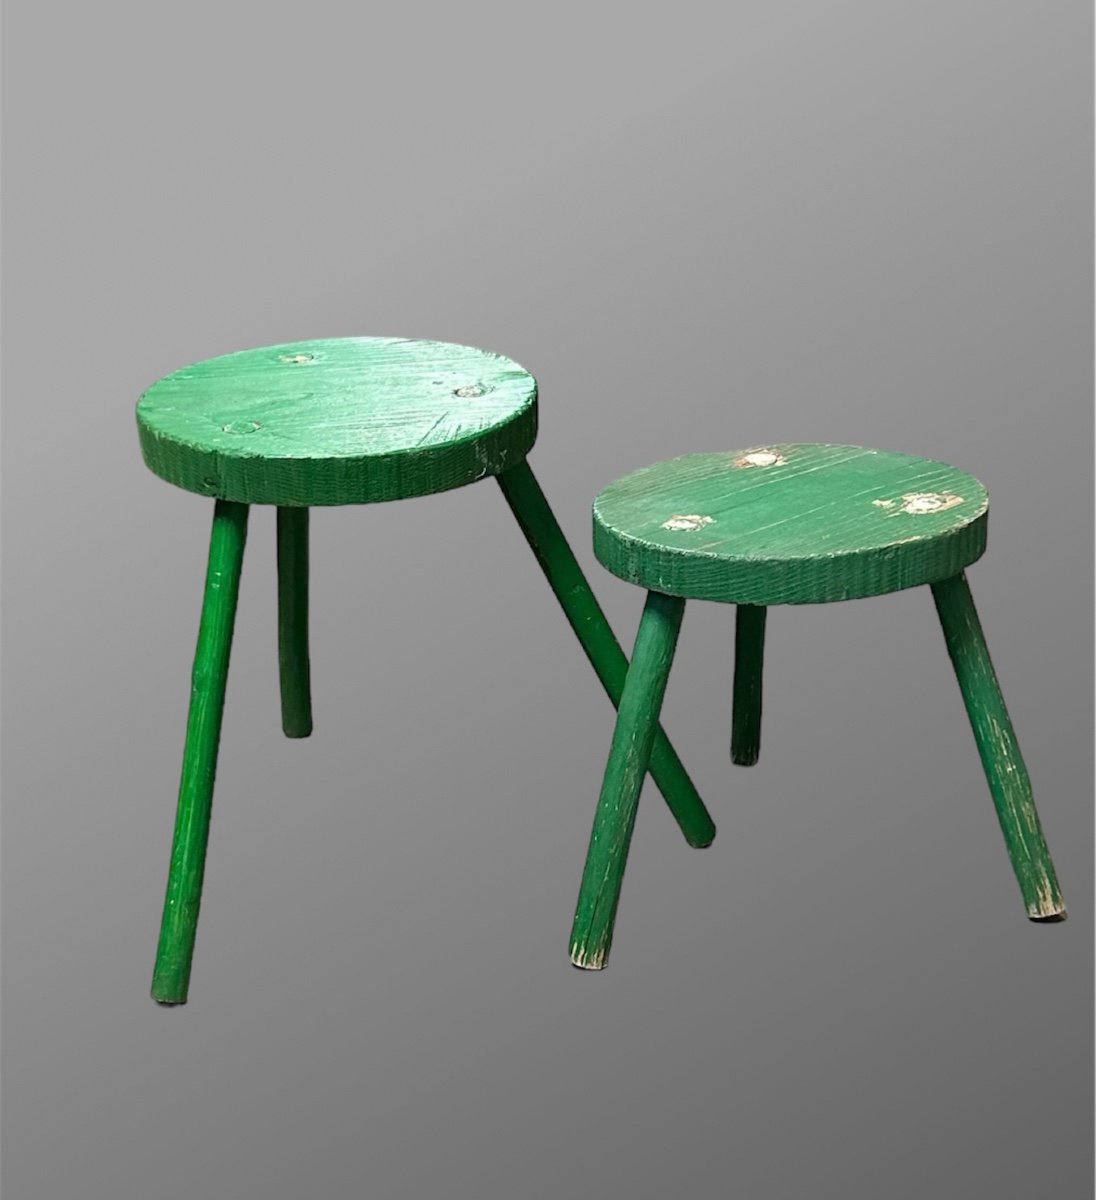 Simpatica coppia di sgabelli verdi - Anni ‘50